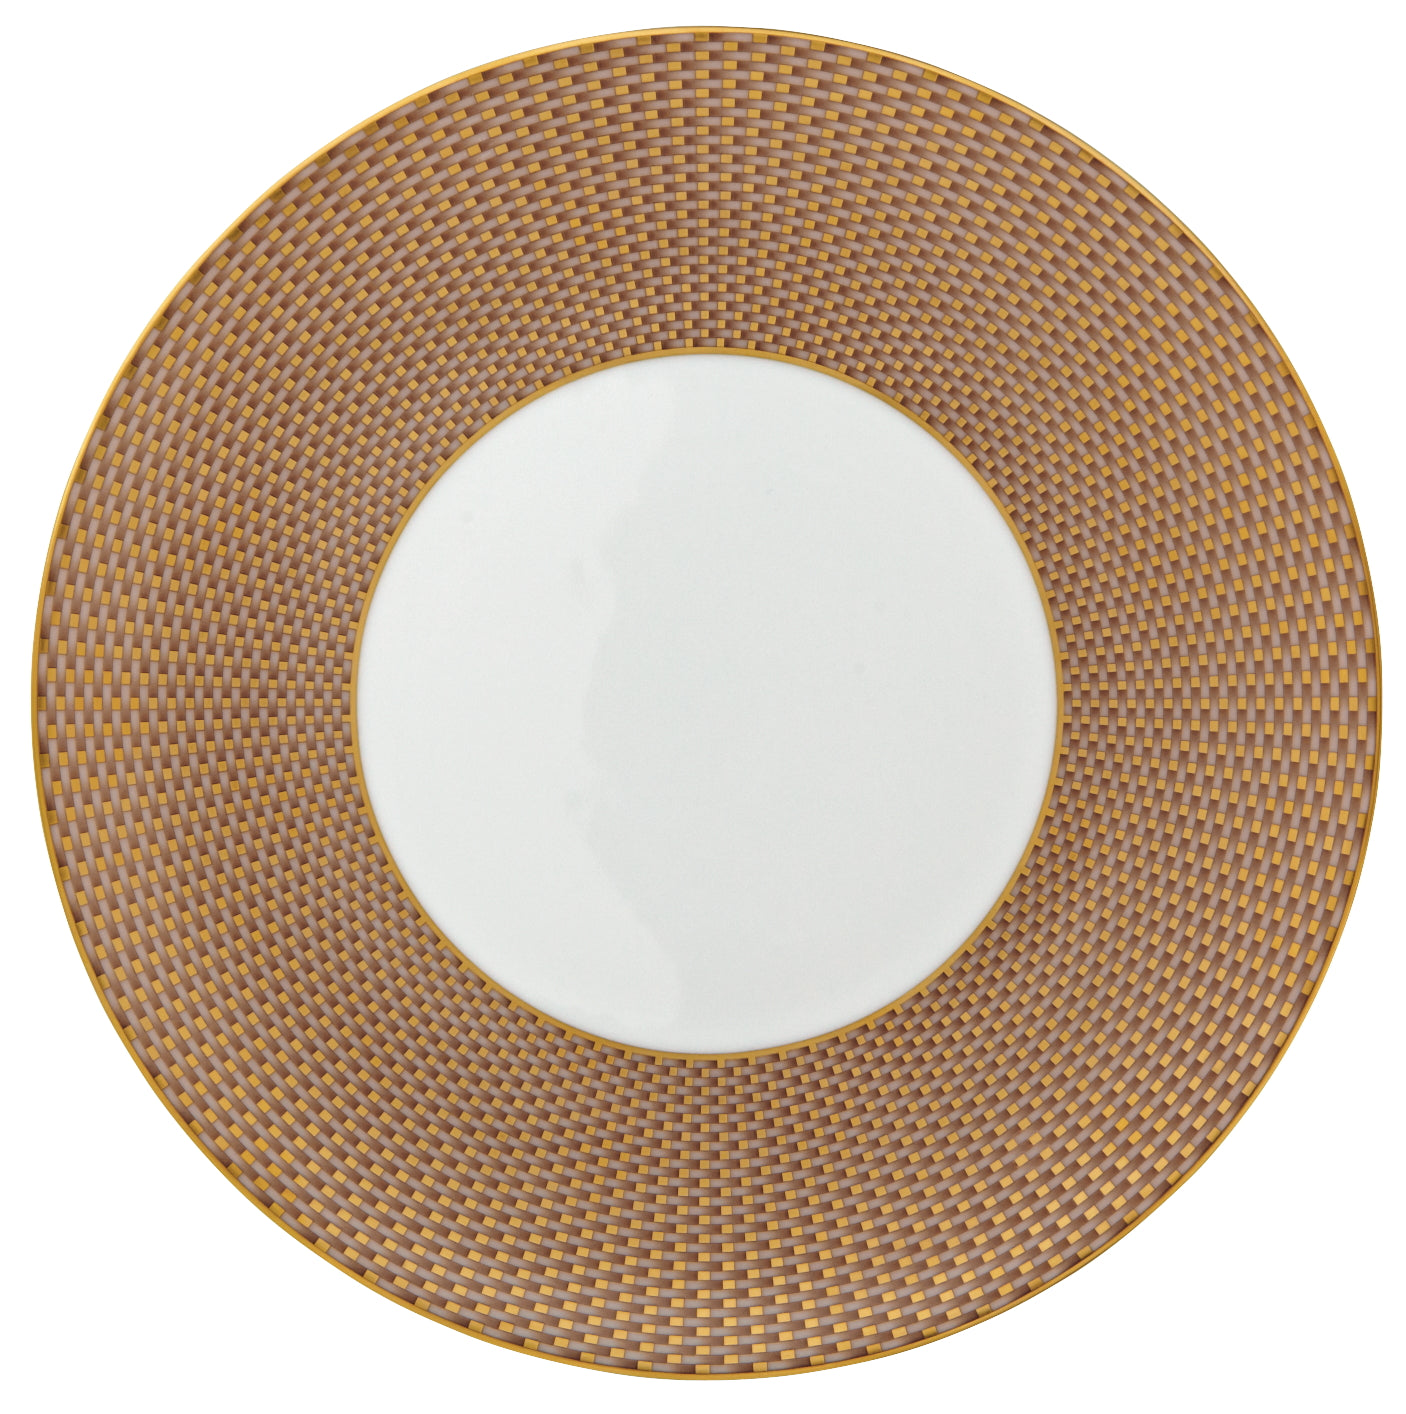 Tresor Beige - American Dinner Plate 10.6 in n1